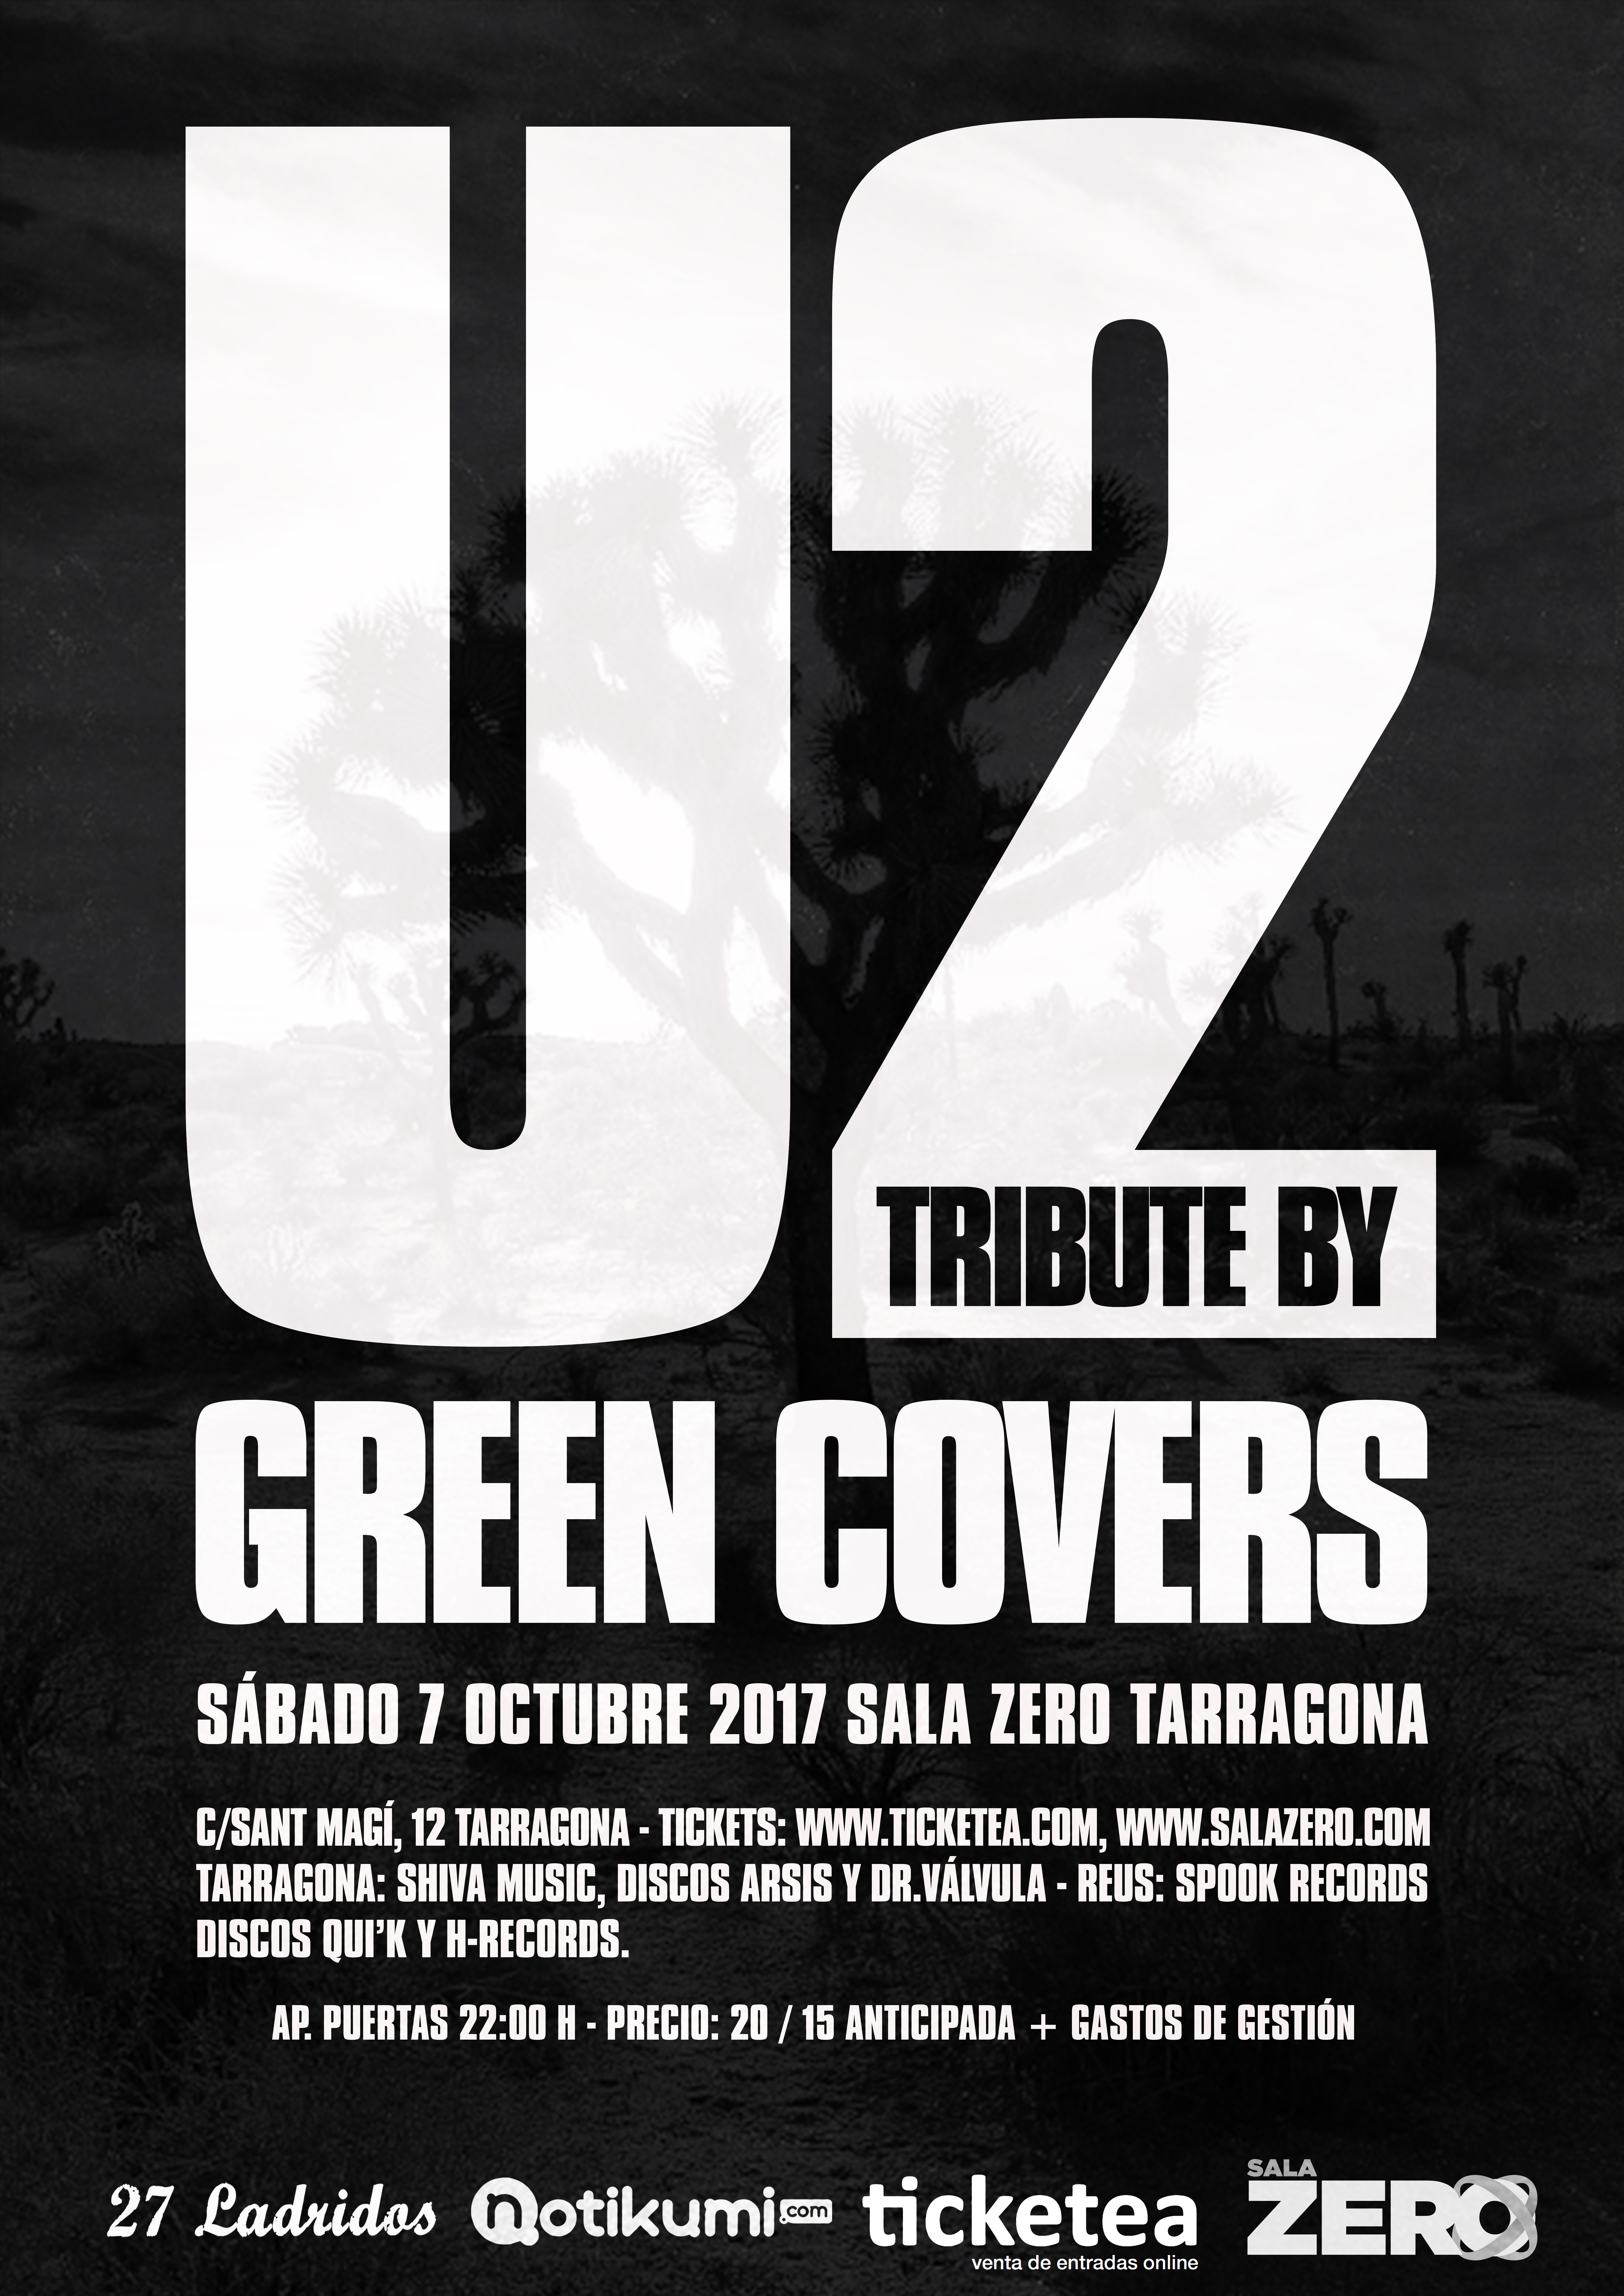 u2 tribute green covers tarragona